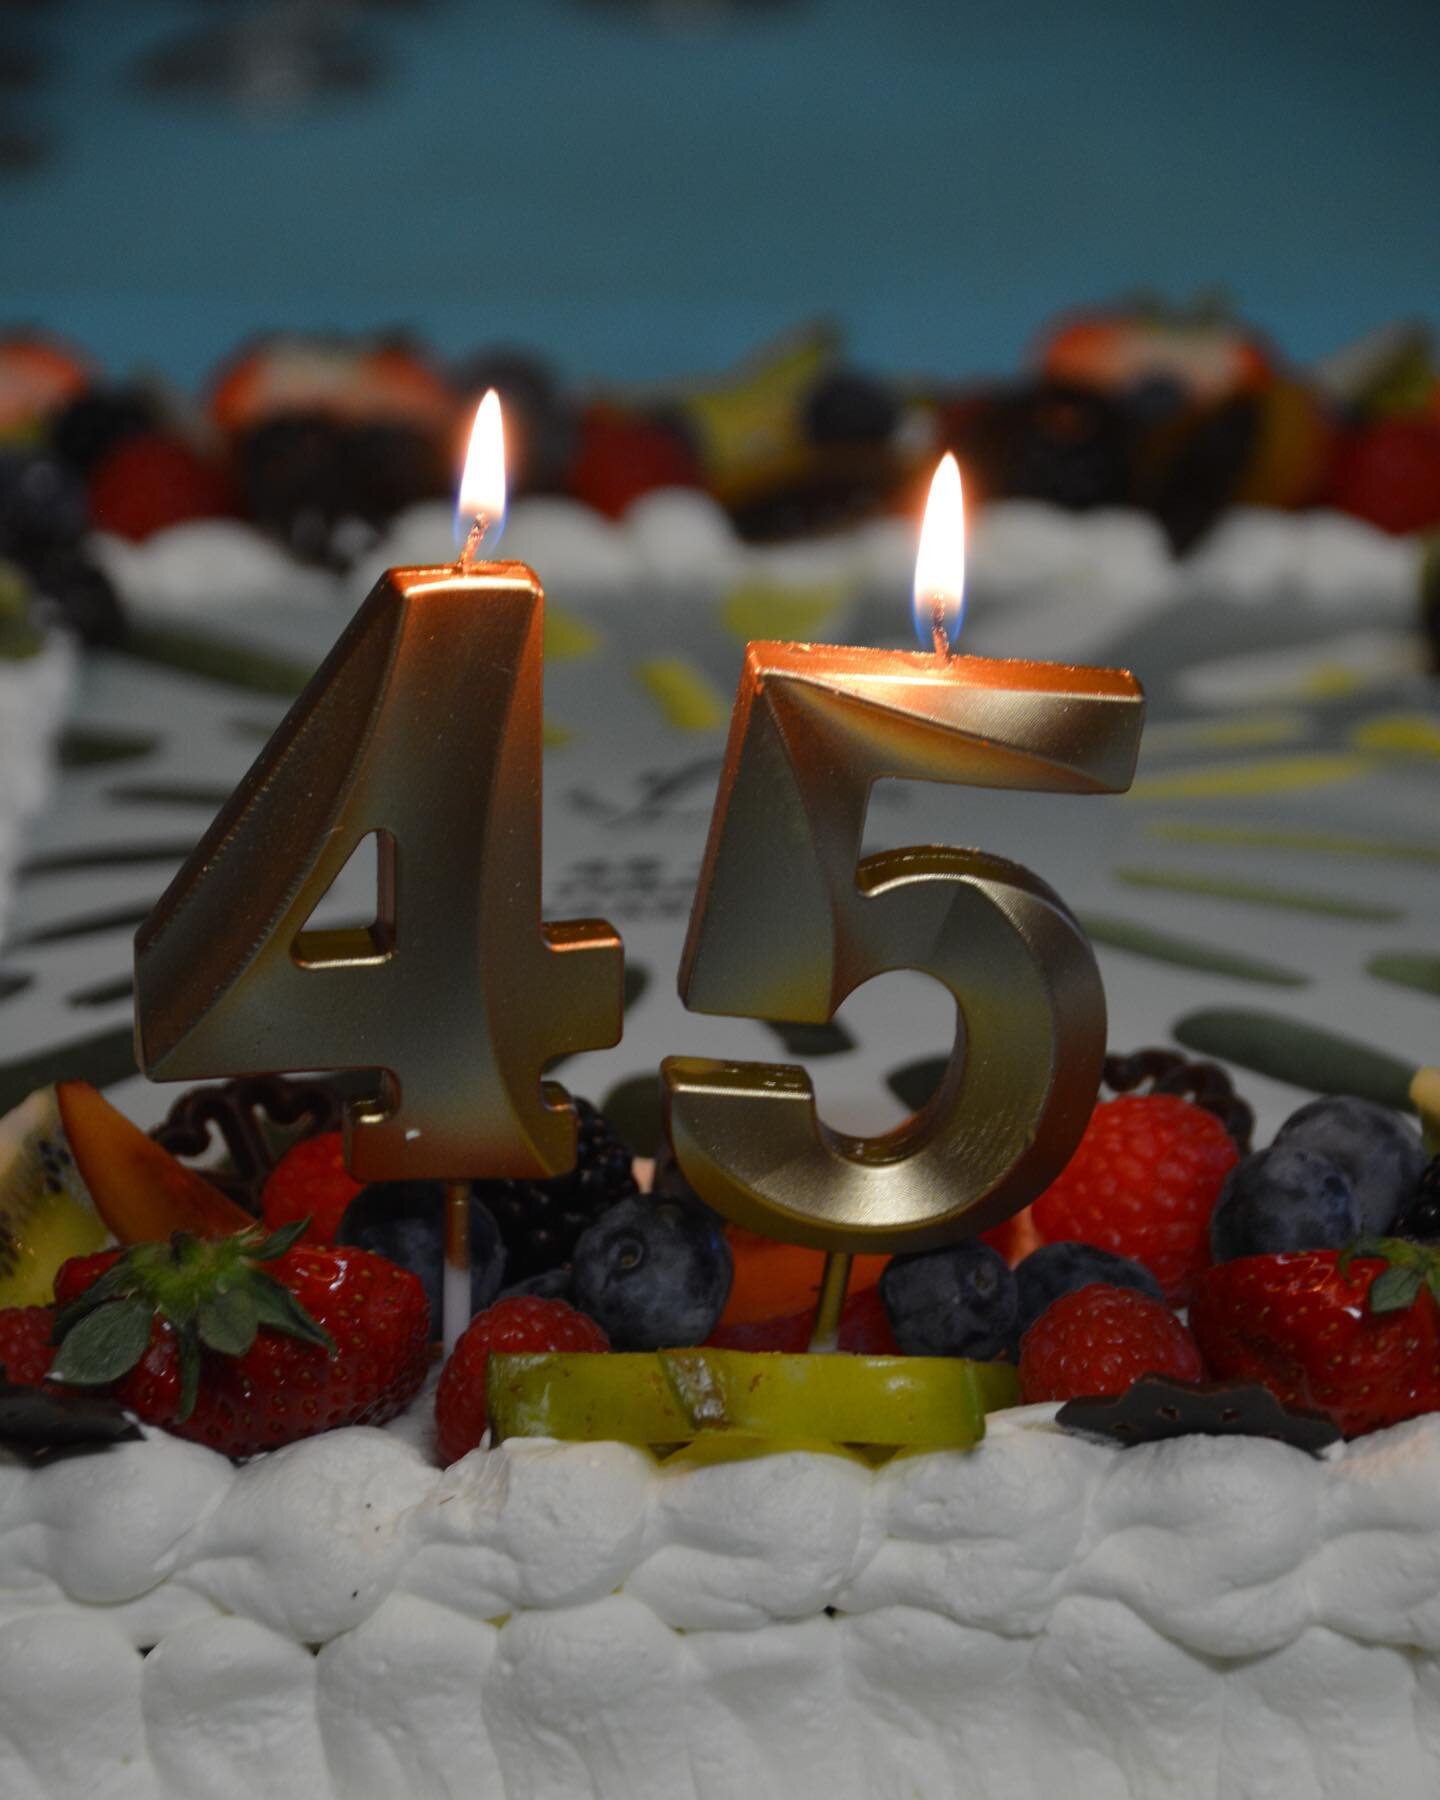 Ons 45 jarig bestaan verdient een feestje met een geweldige taart van bakkerij Priem. Het hart van onze turnkring (ons Annie) werd ook in de bloemetjes gezet🎂💐 #45years #party #turnkringgeraardsbergen